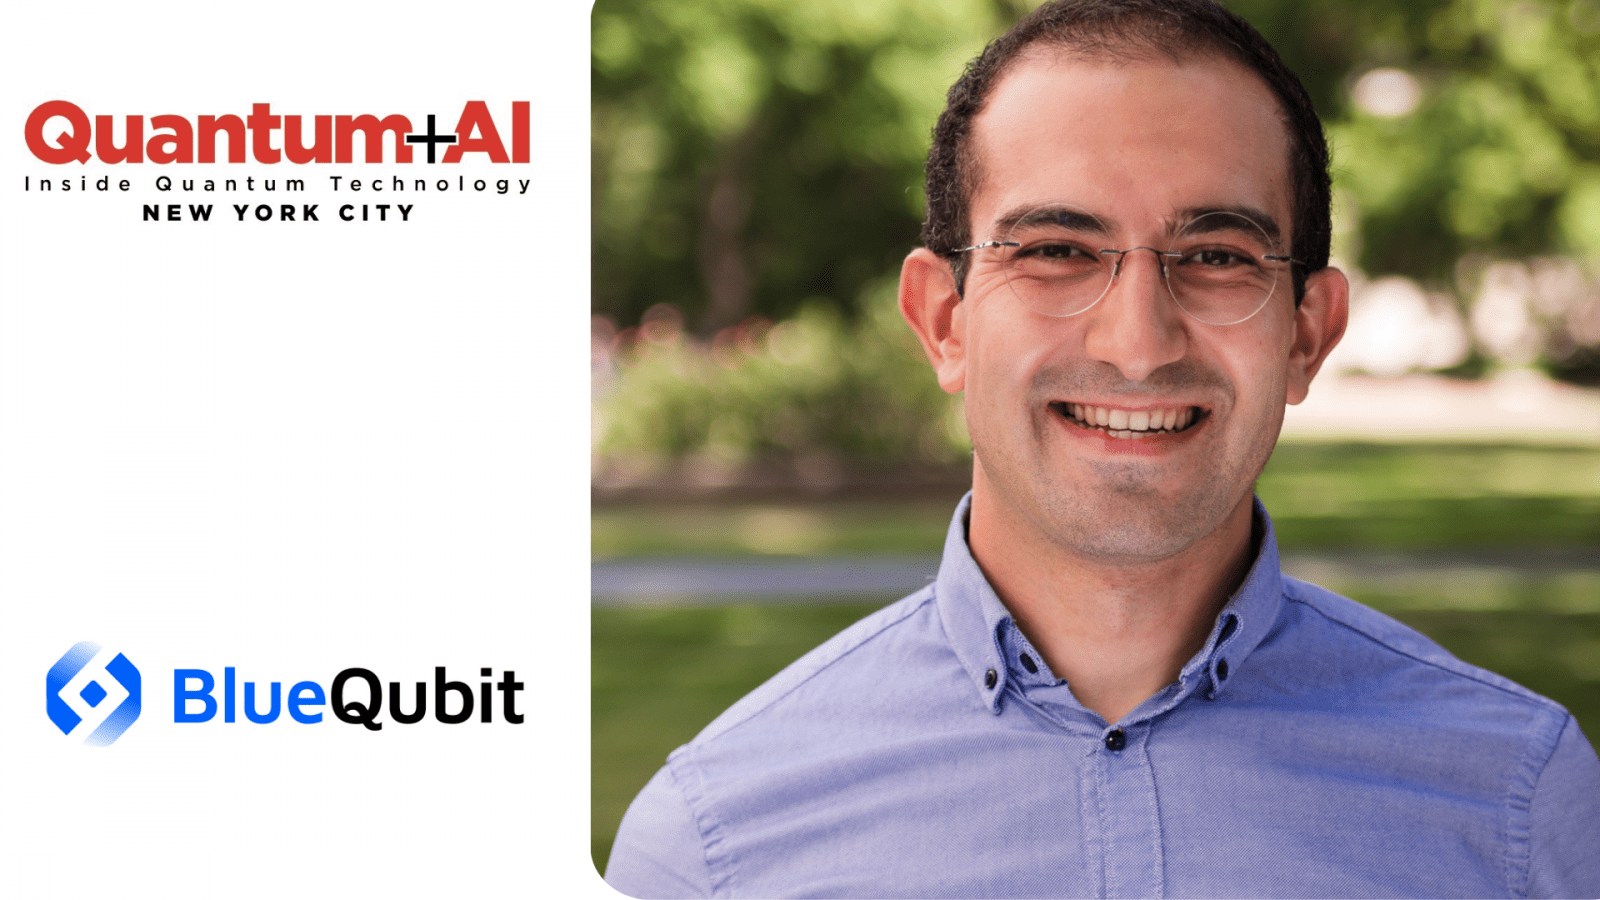 Hrant Gharibyan, BlueQubitin toimitusjohtaja ja perustaja, on vuoden 2024 puhuja IQT Quantum plus AI -konferenssissa New Yorkissa